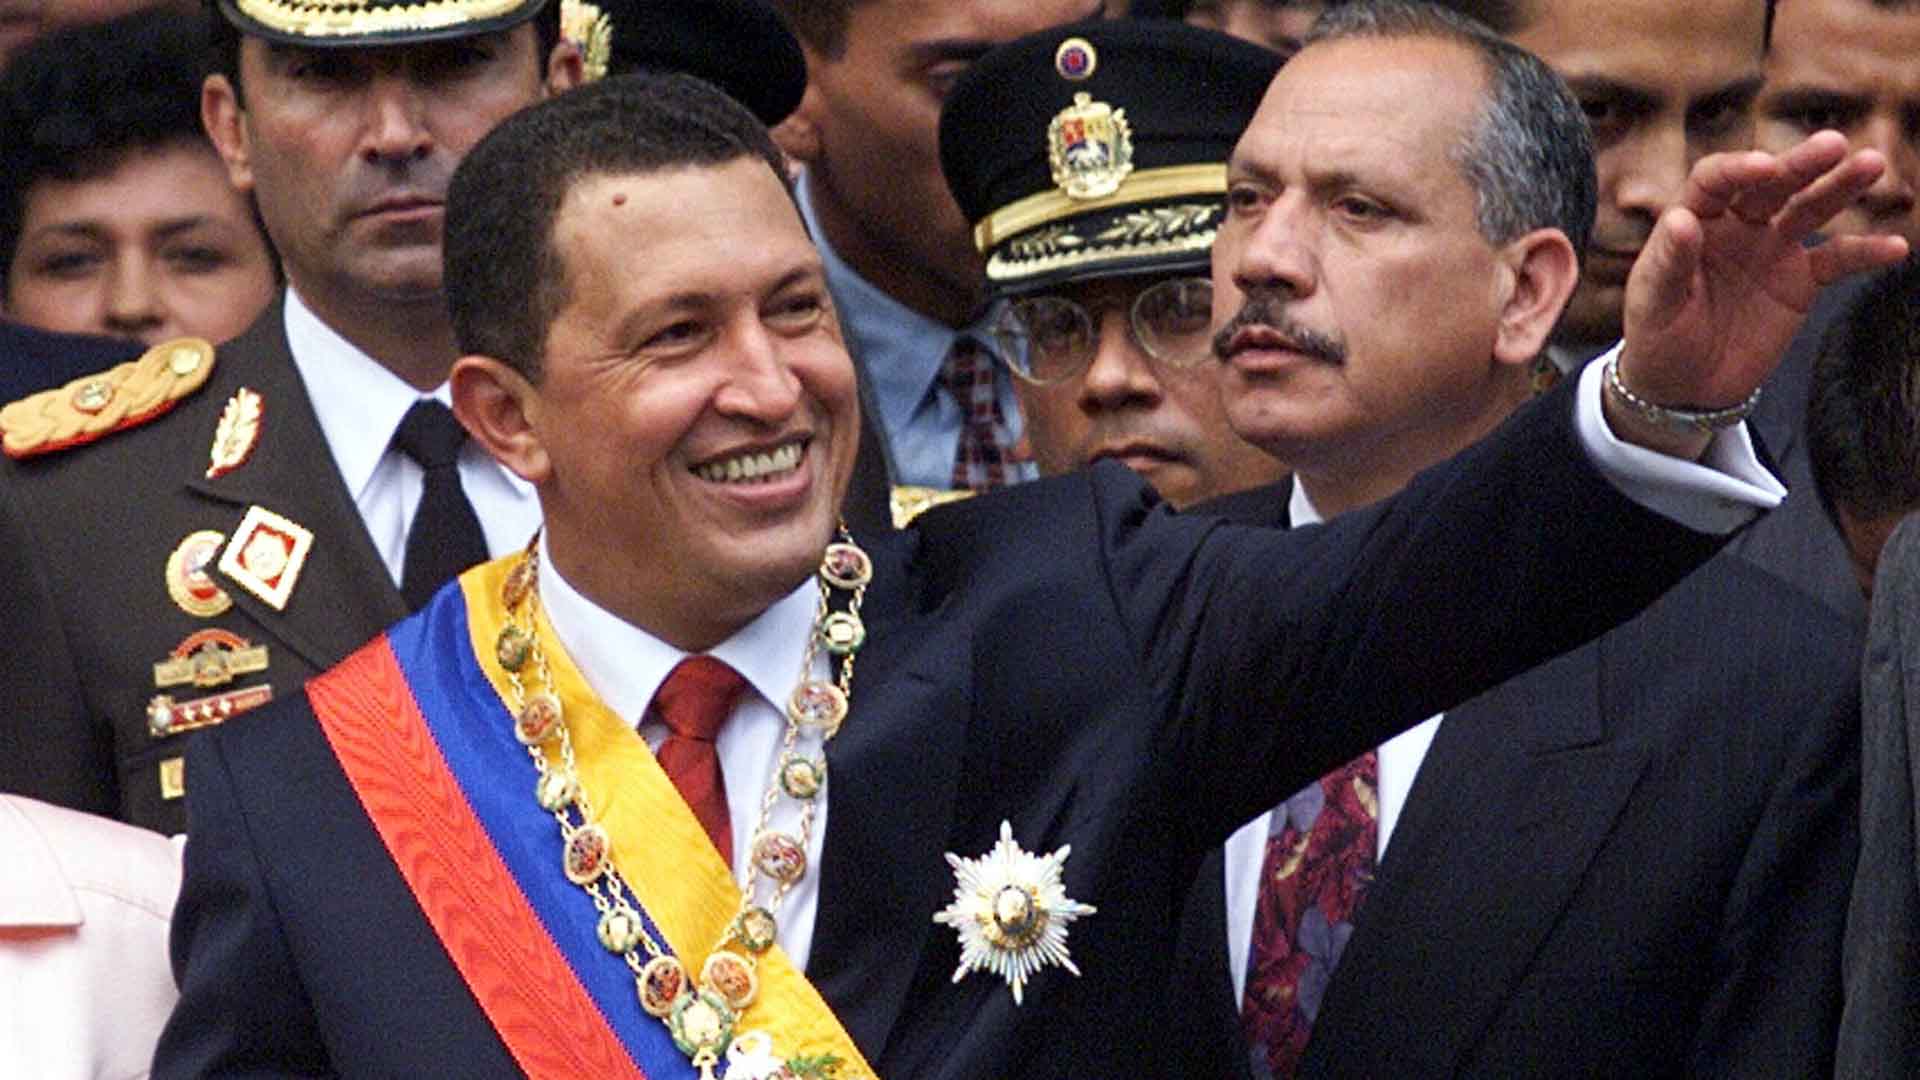 La Audiencia Nacional accede a extraditar al guardaespaldas de Chávez reclamado por blanqueo de capitales